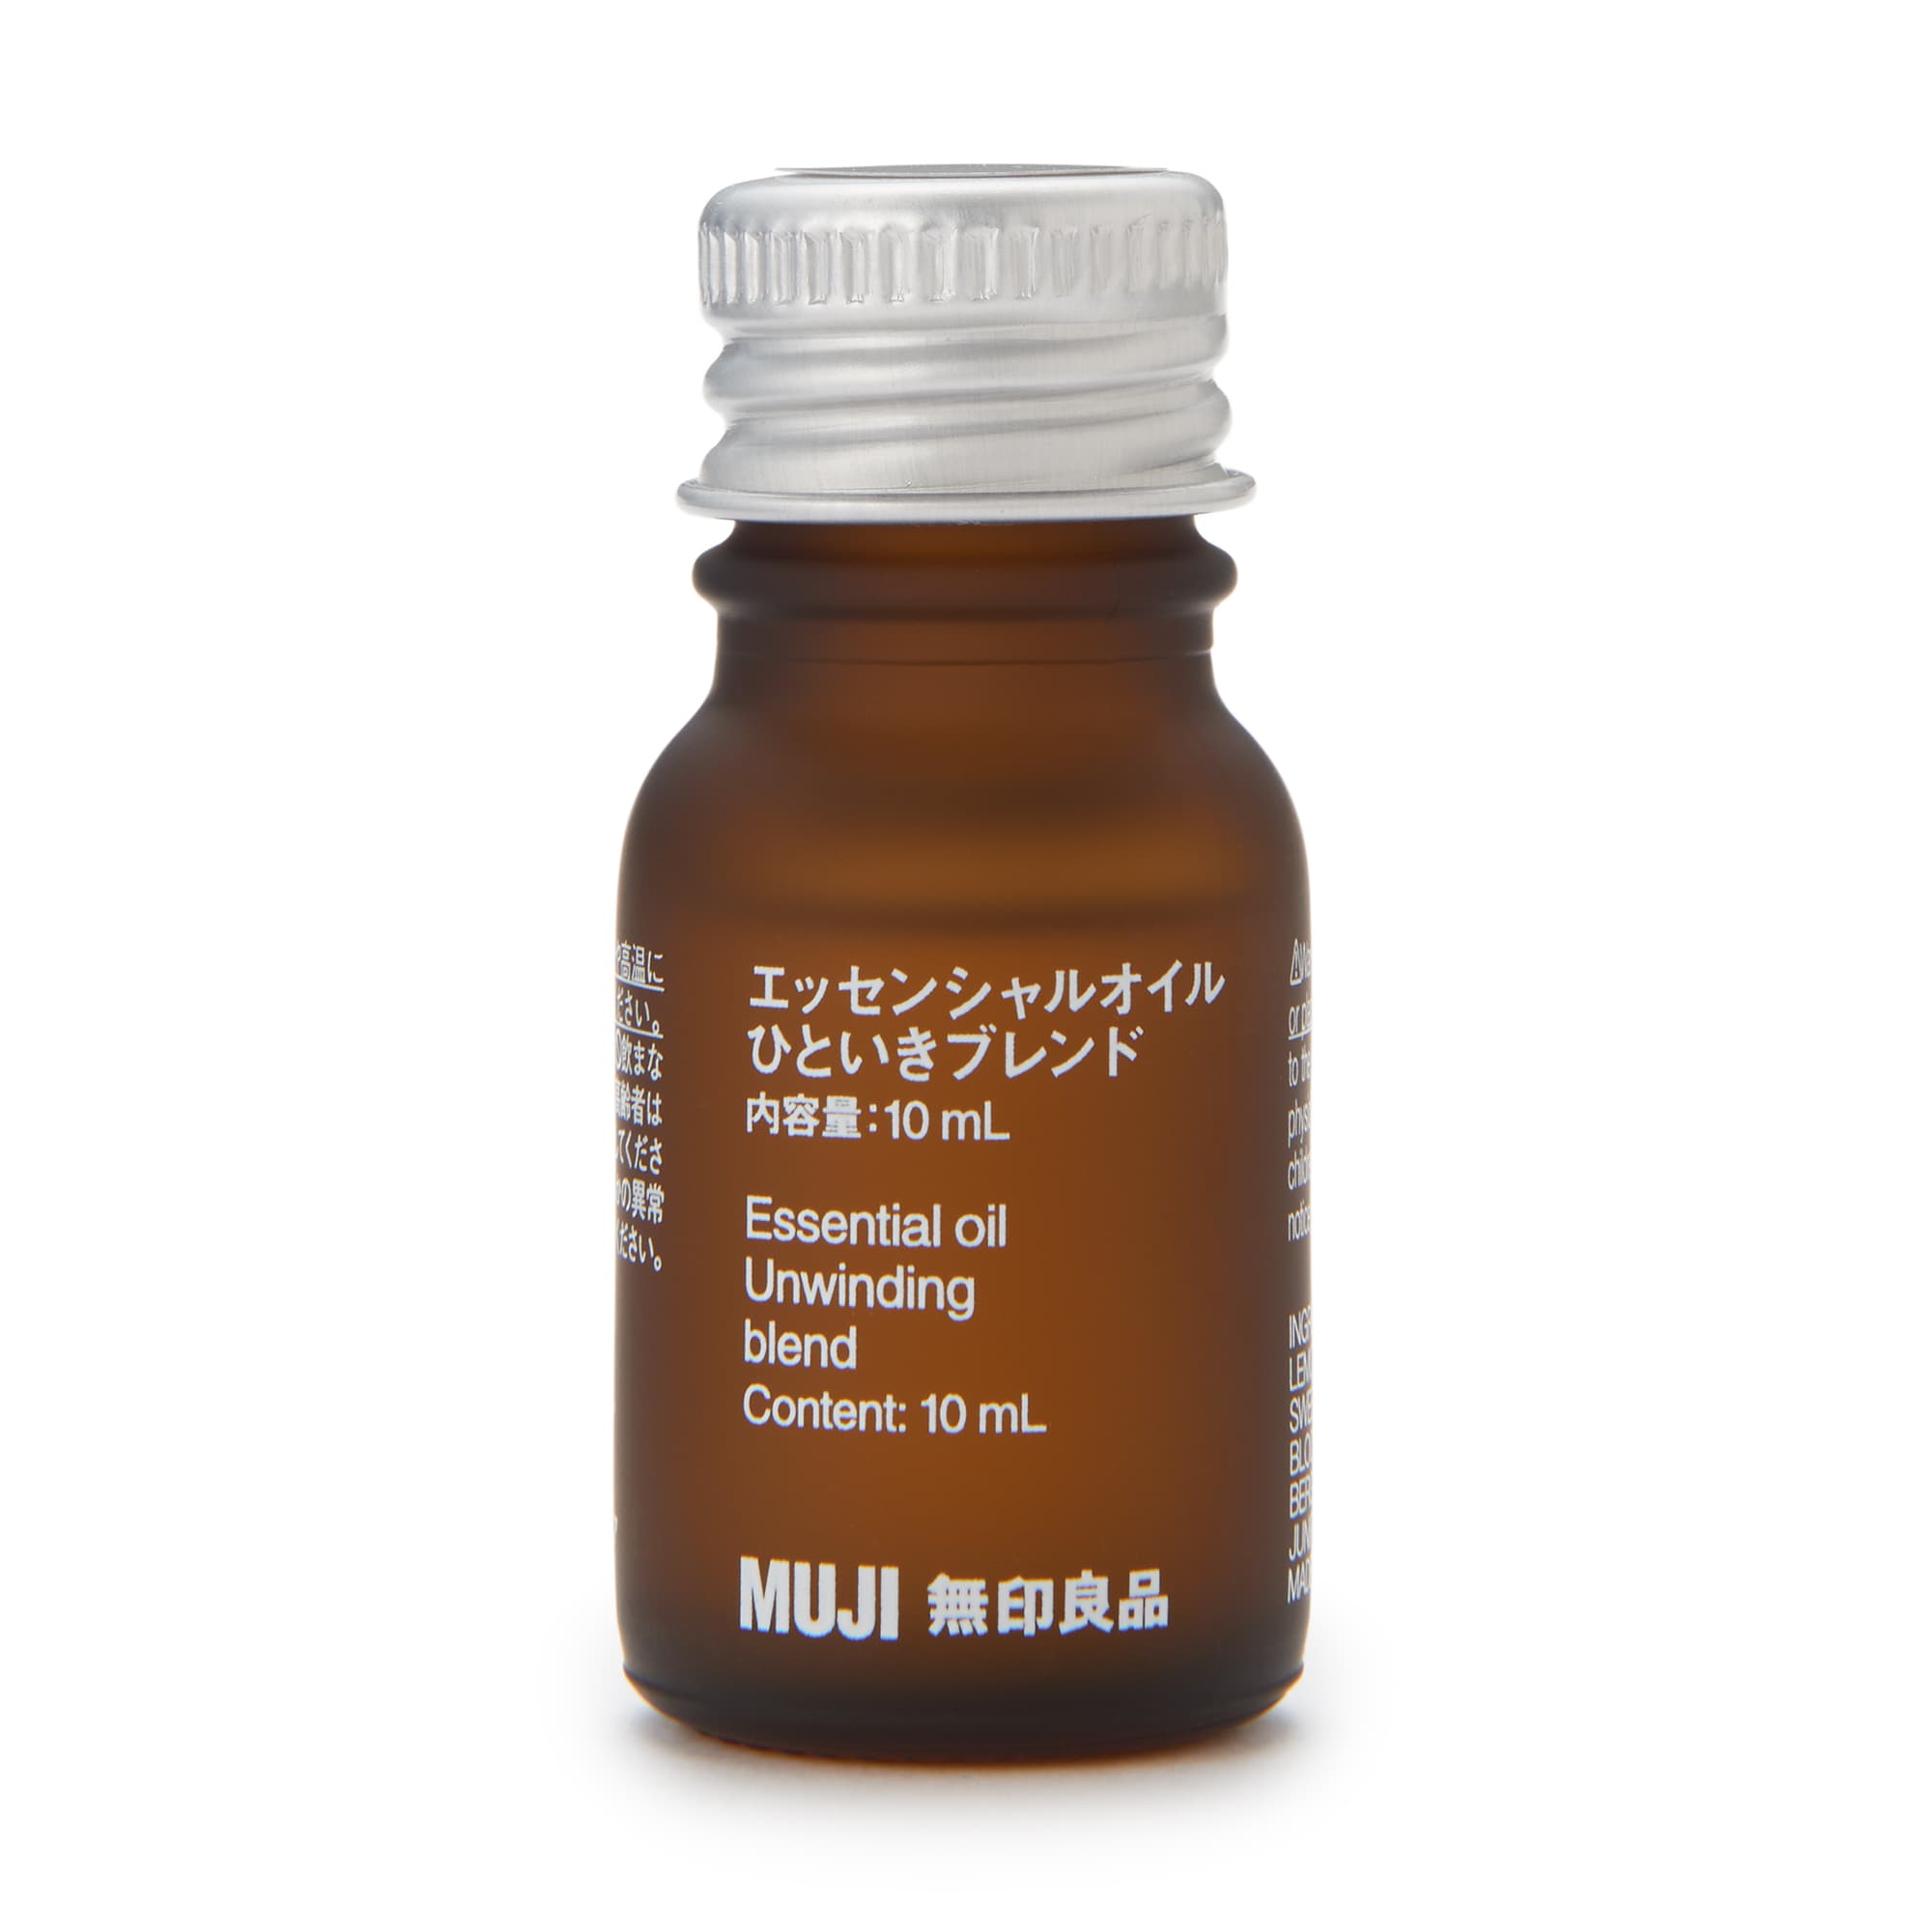 무인양품 일본 천연 아로마 향수 오일 에센셜 오일 10ml 언윈딩 